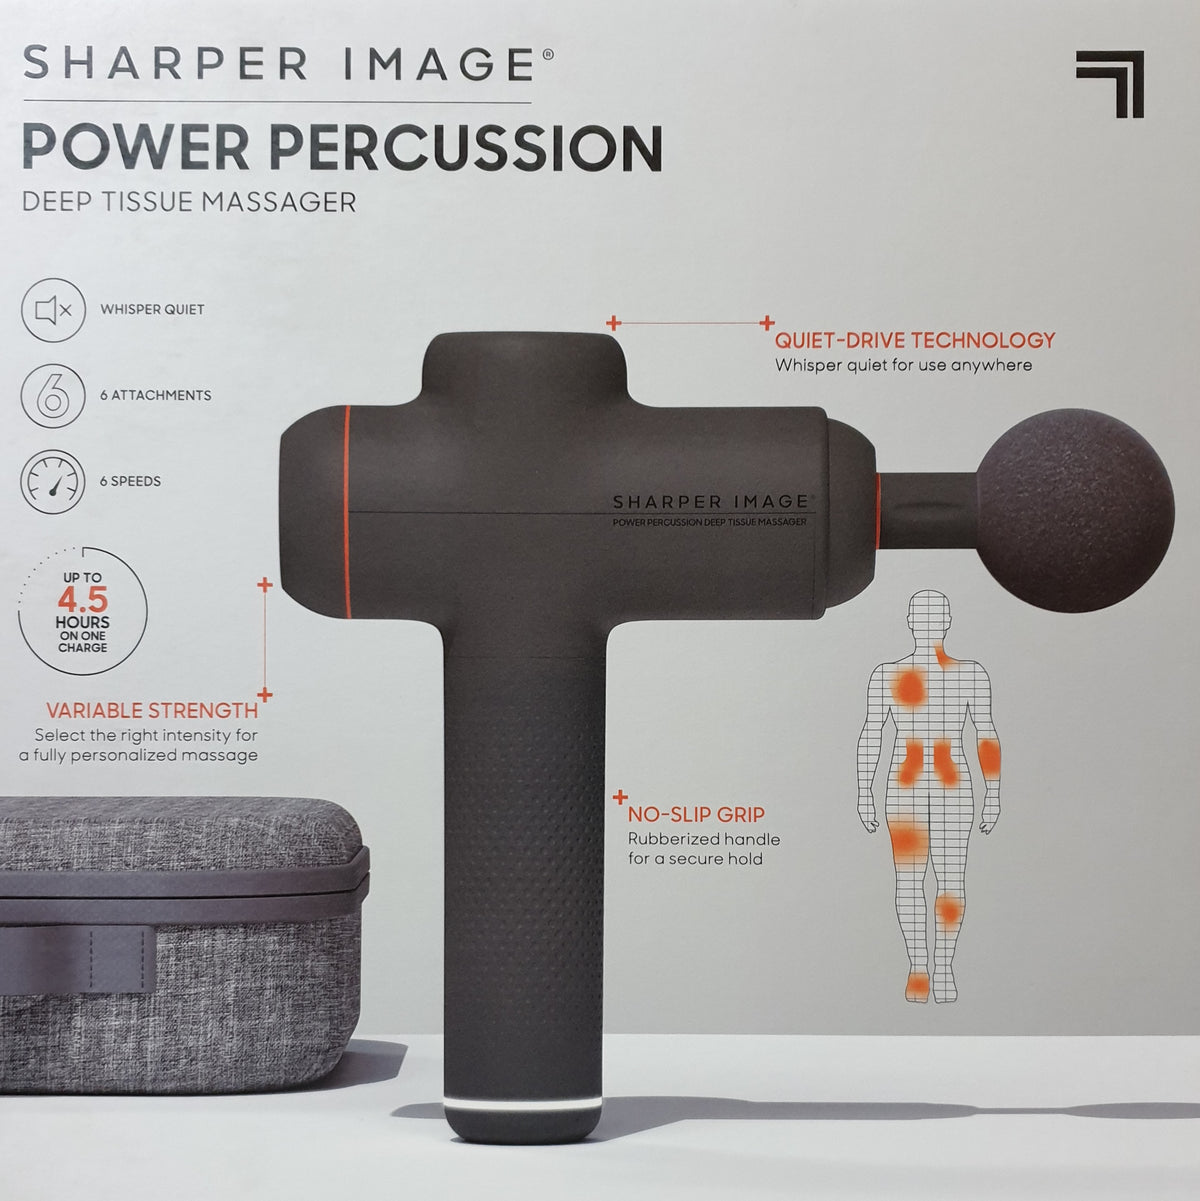 Sharper Image Deep Tissue Massager Power Percussion Massage Gun